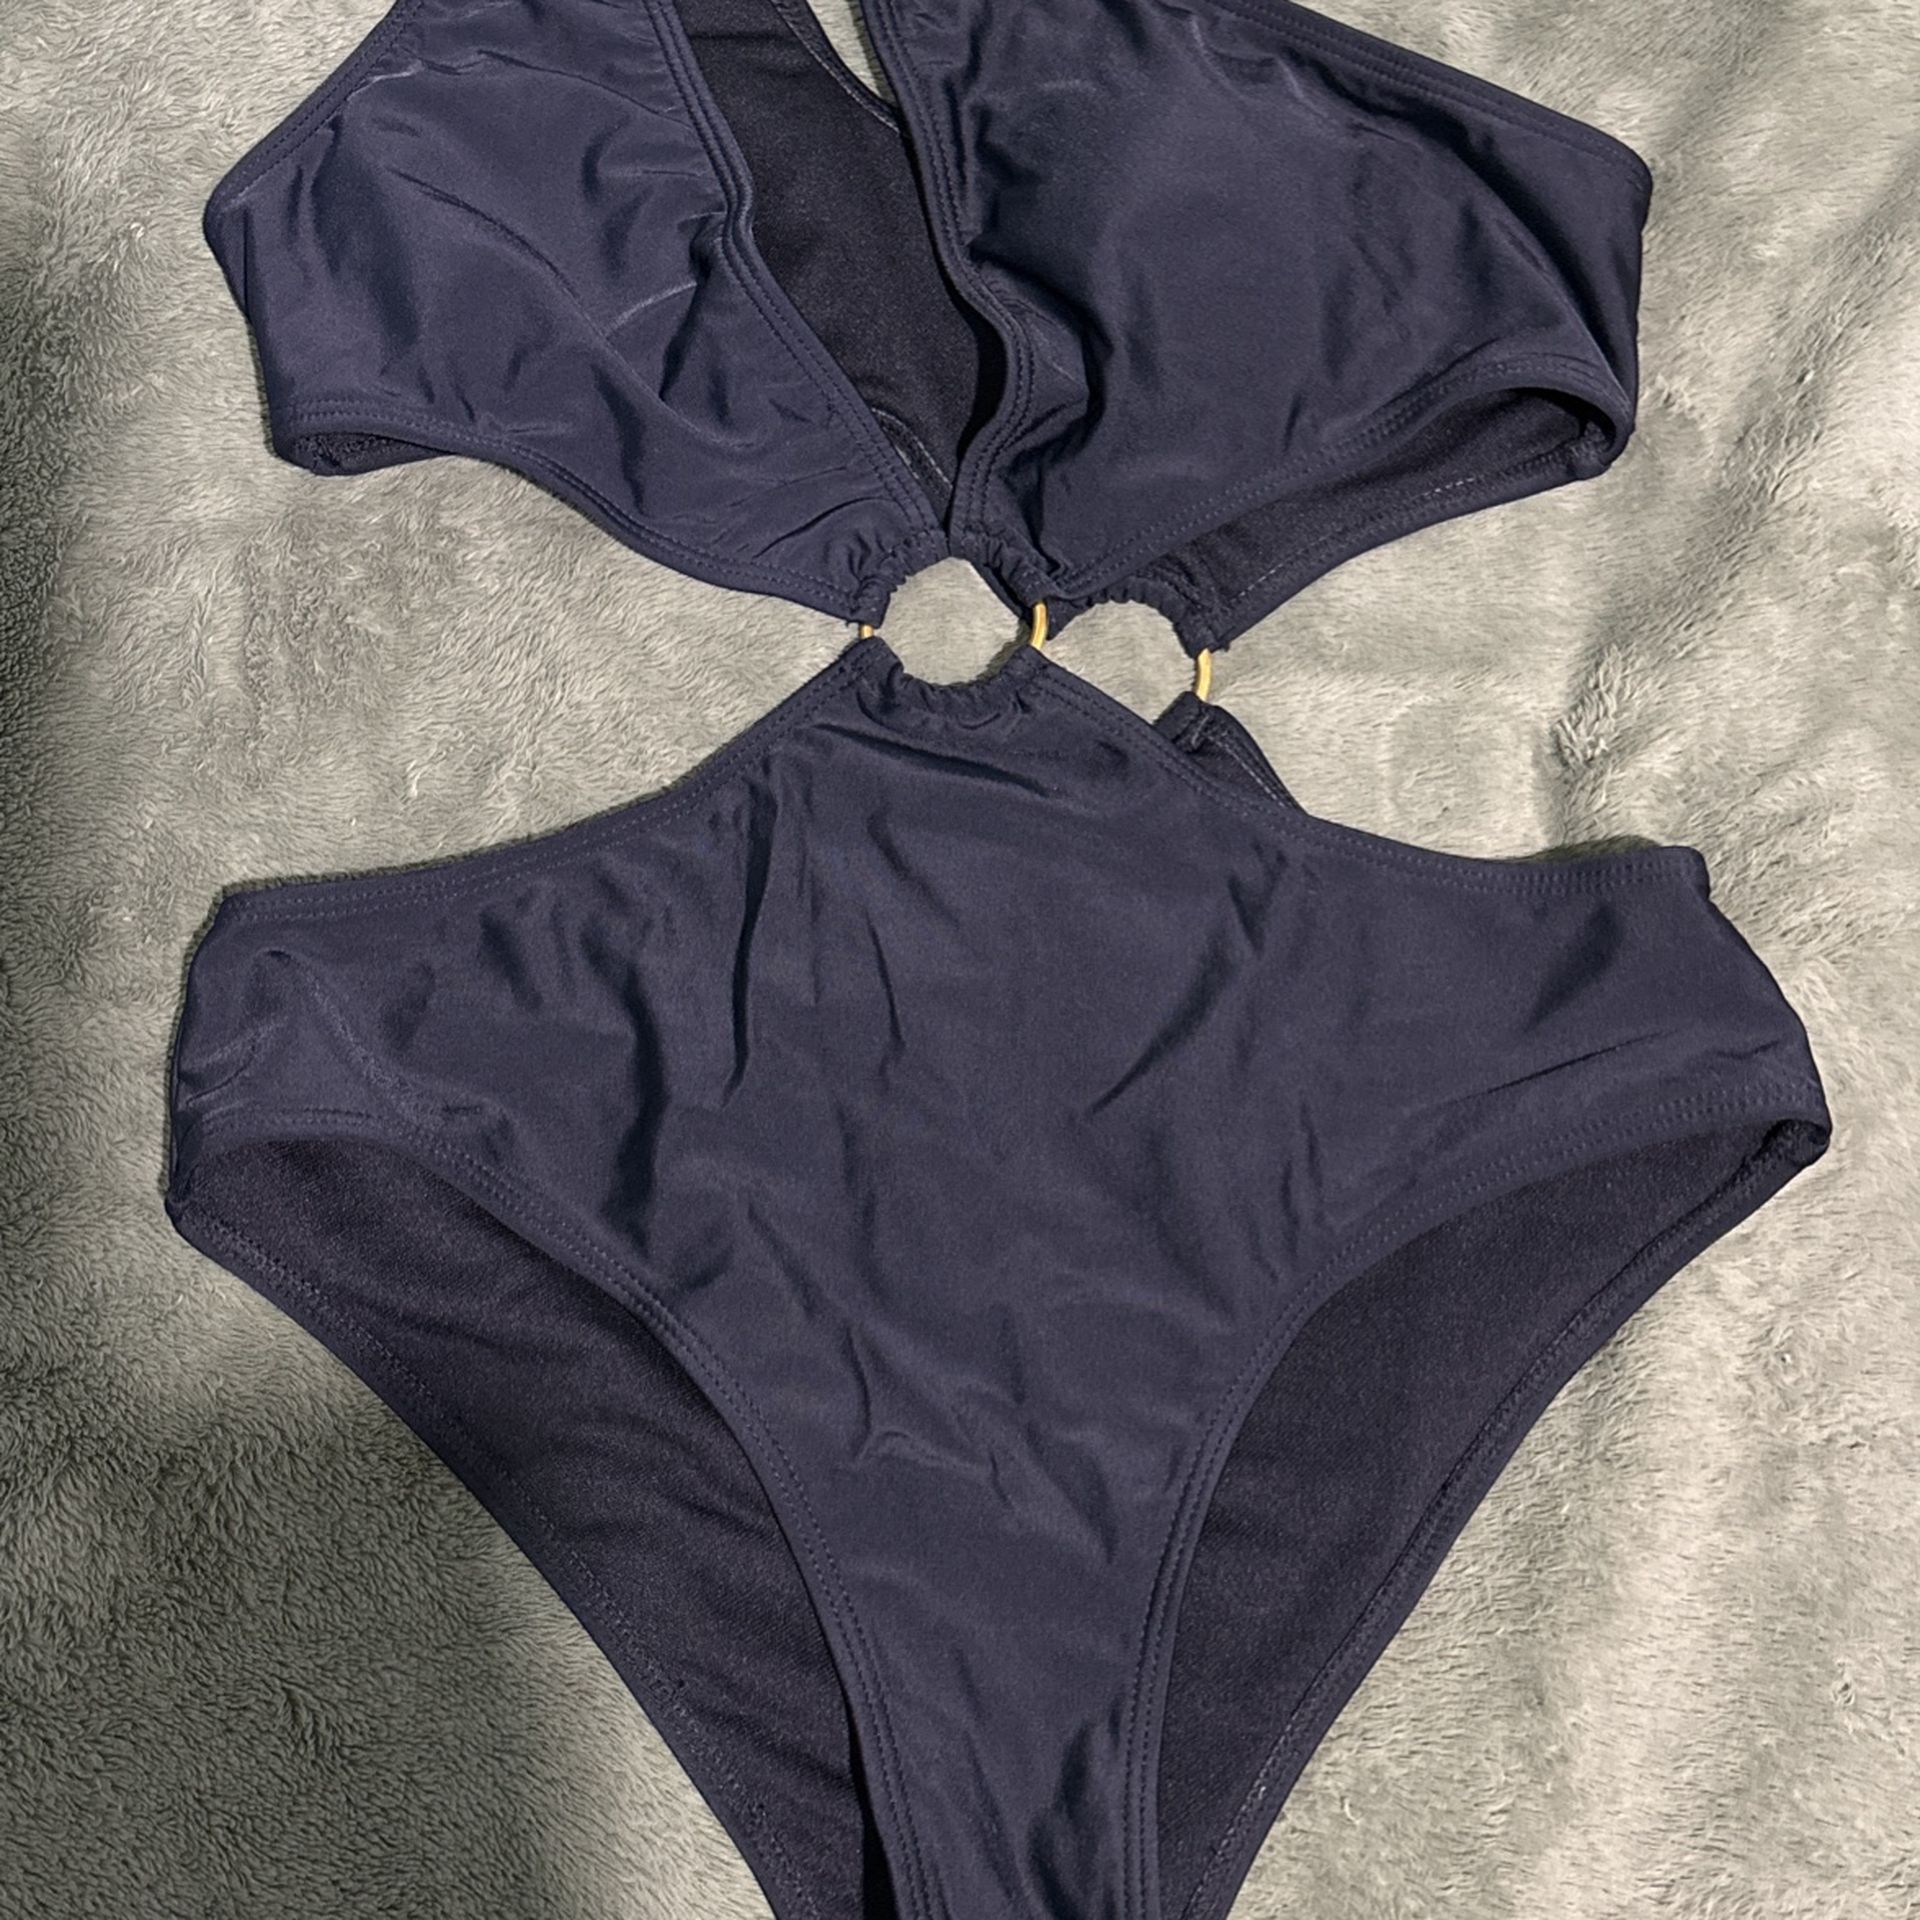 Swimsuit- Medium-$8